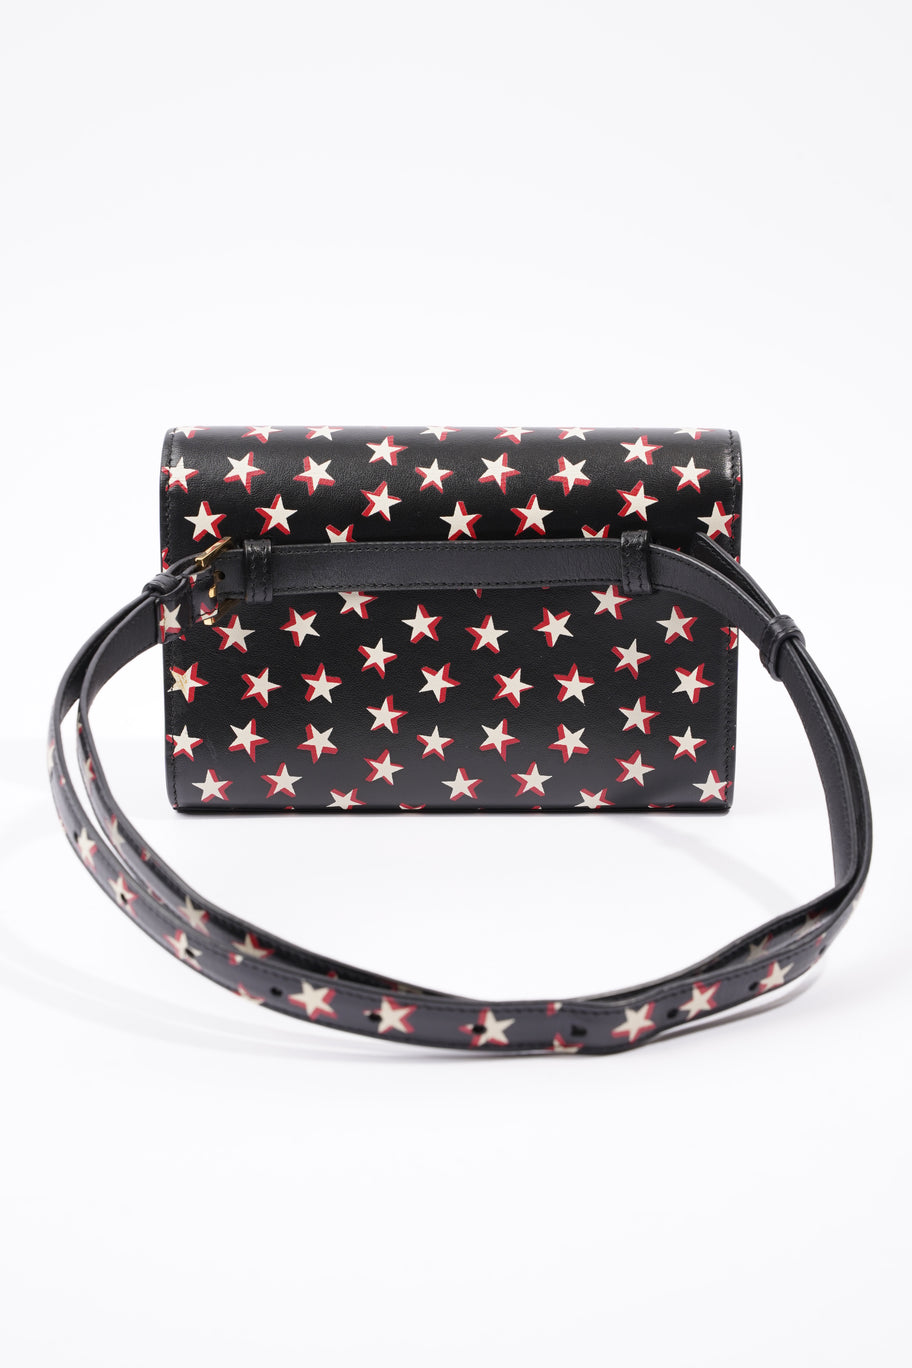 Kate Belt Bag Black / Stars Leather Image 5